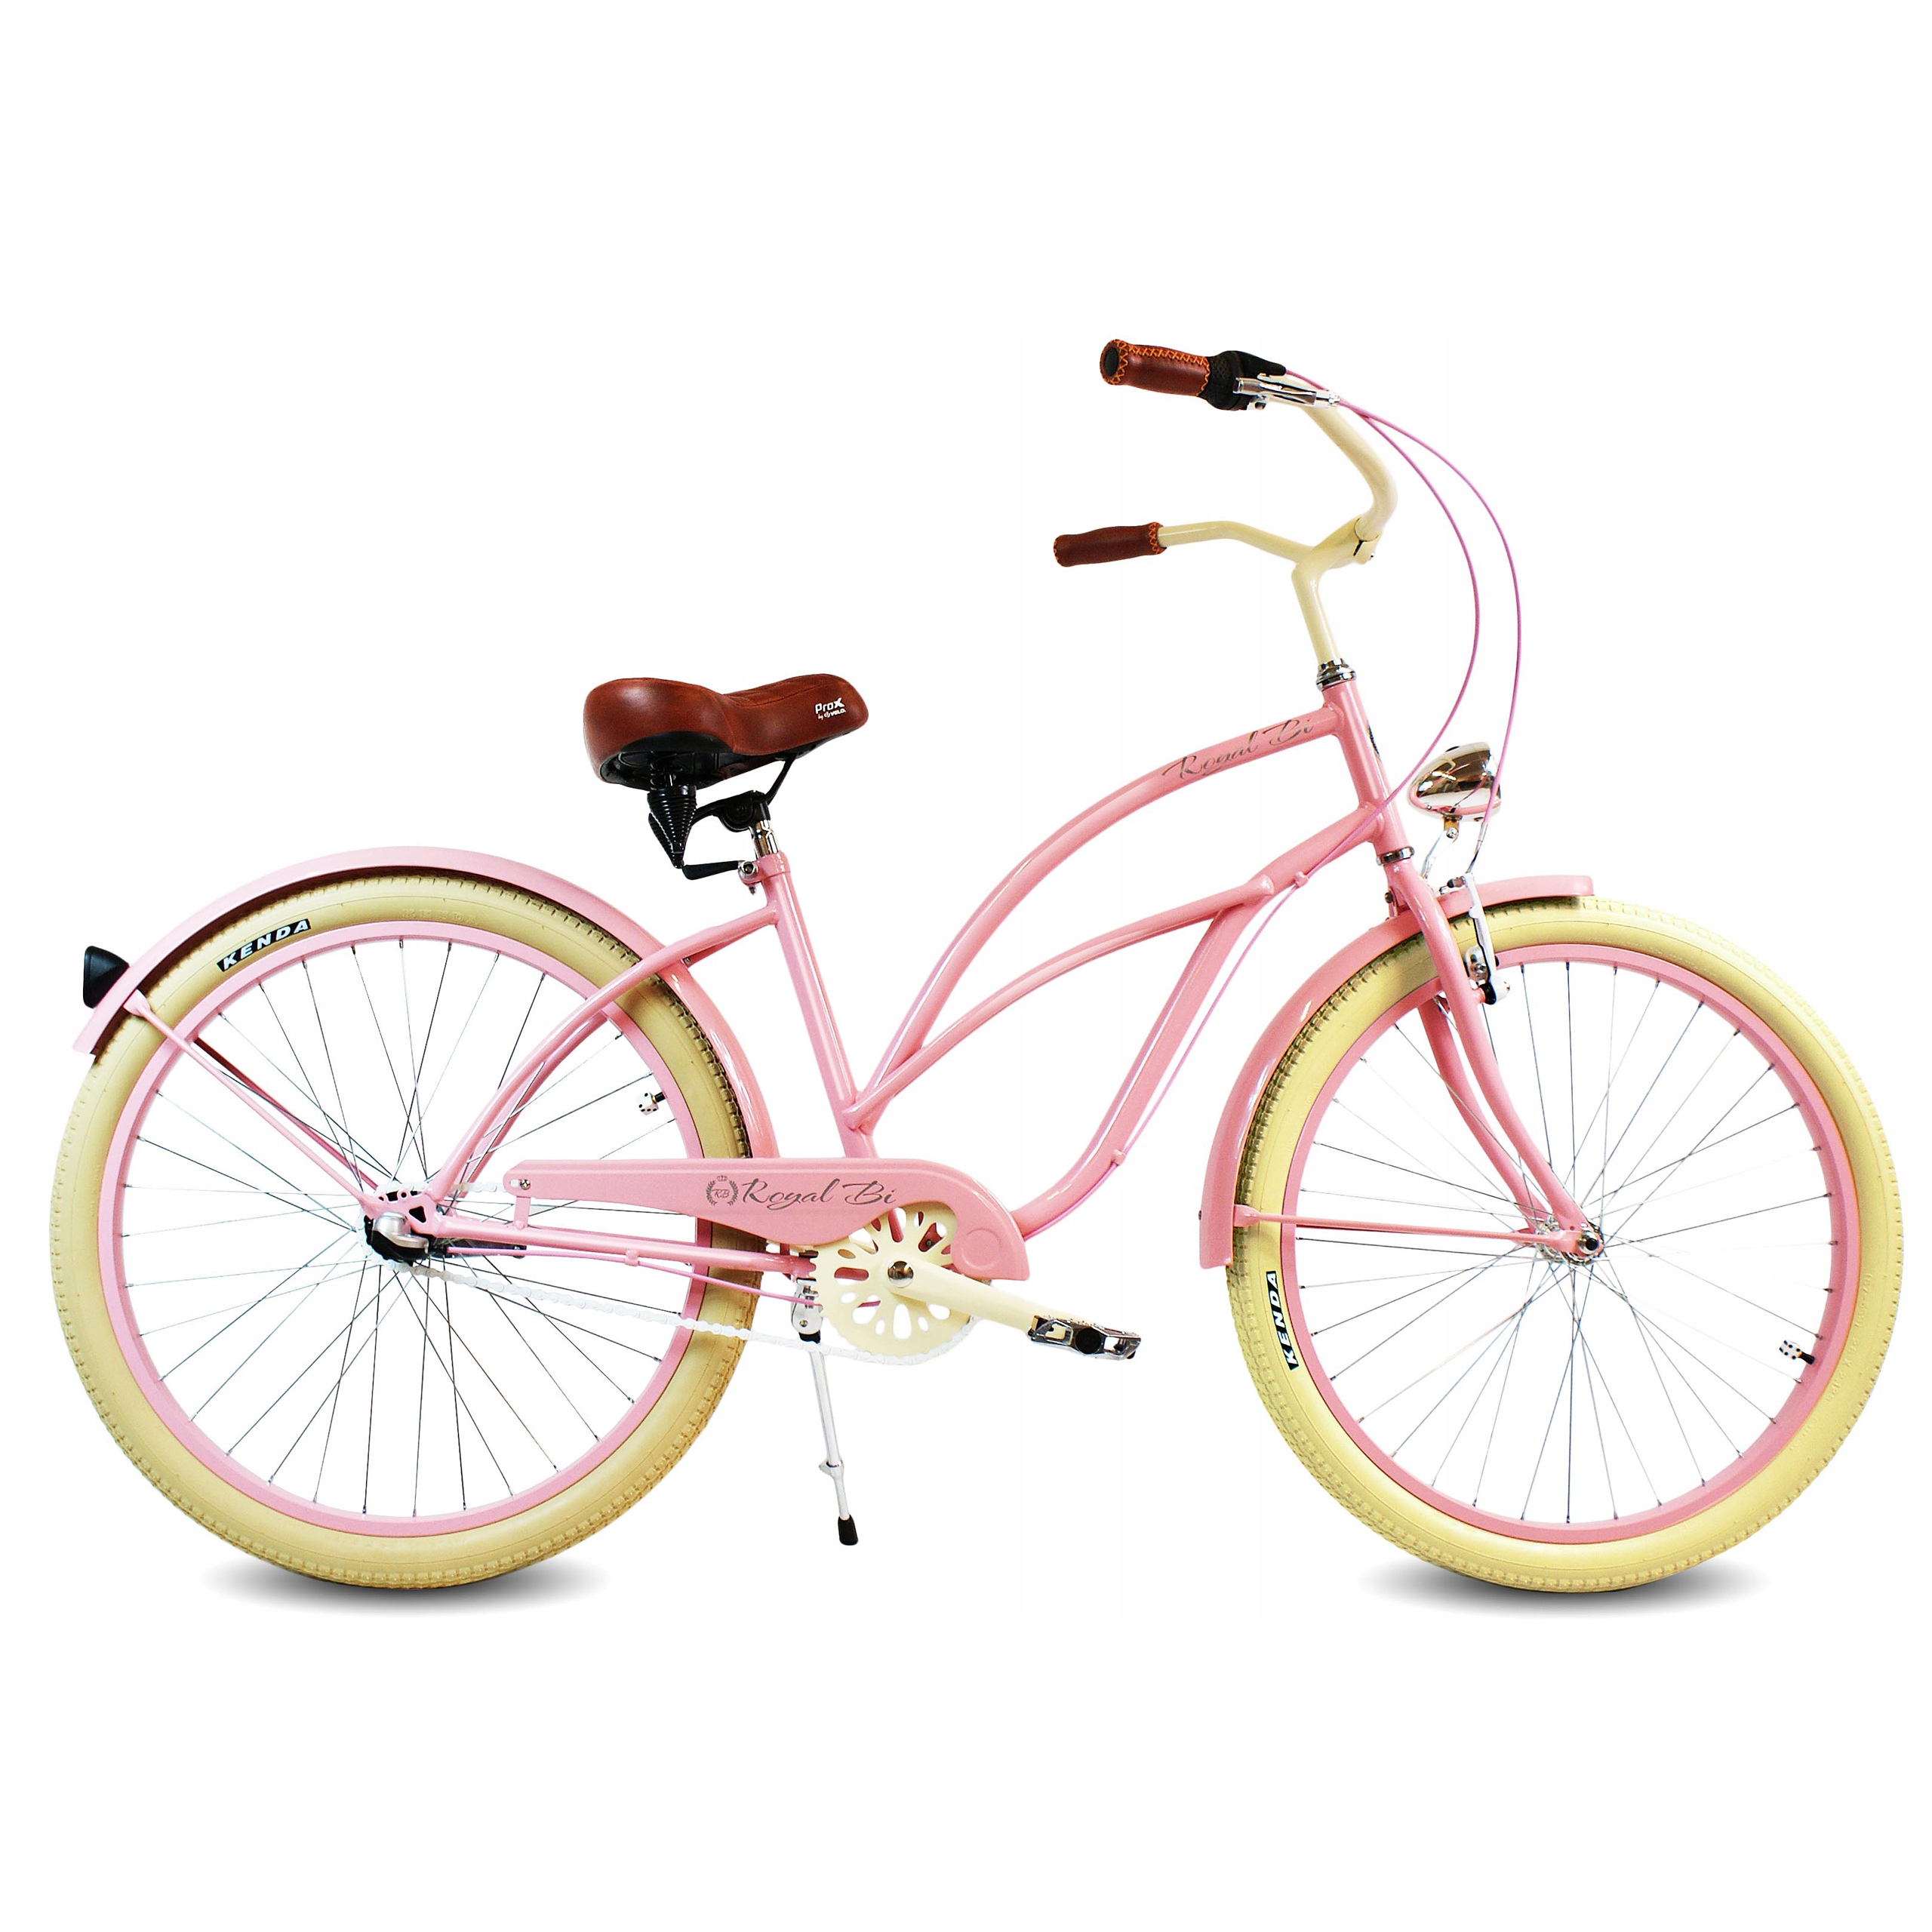 Куплю велосипед женский б. Велосипед женский stels розовый круизер. Стелс велосипед круизер розовый. Велосипед стелс женский круизер. Прогулочный велосипед стелс.